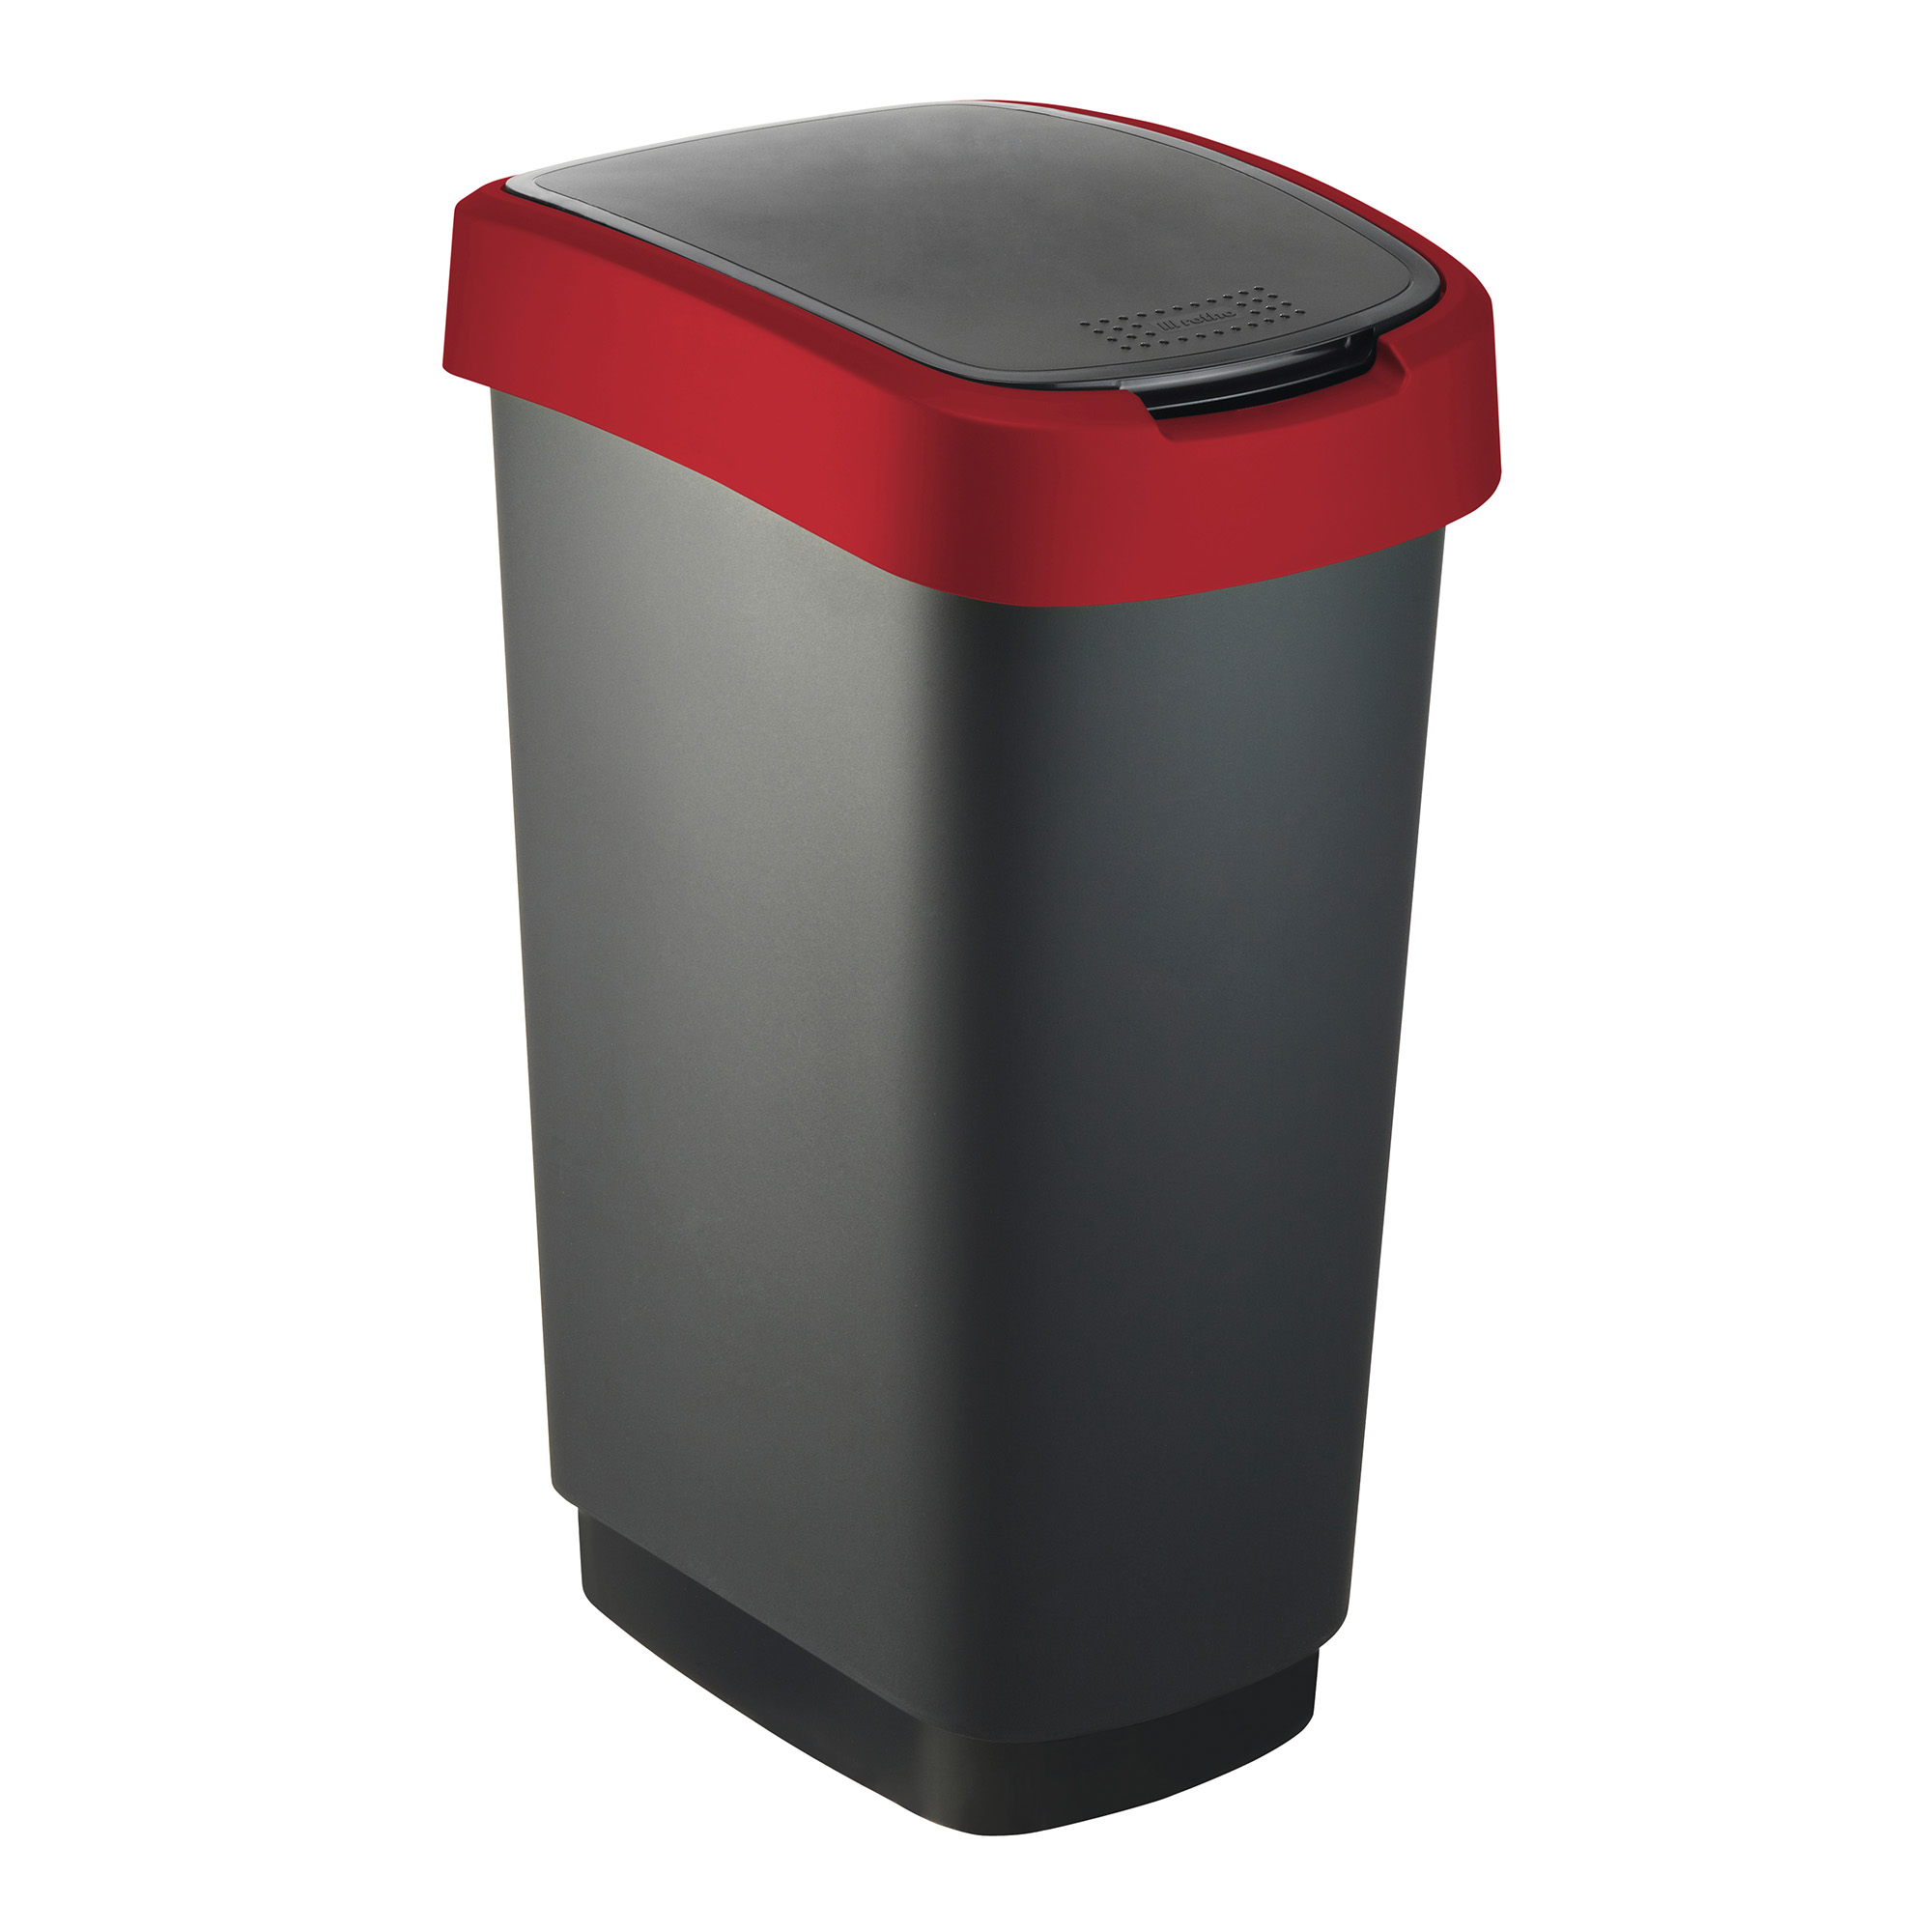 RothoPro Twist Abfallbehälter 50 Liter schwarz/rot 59135438_1